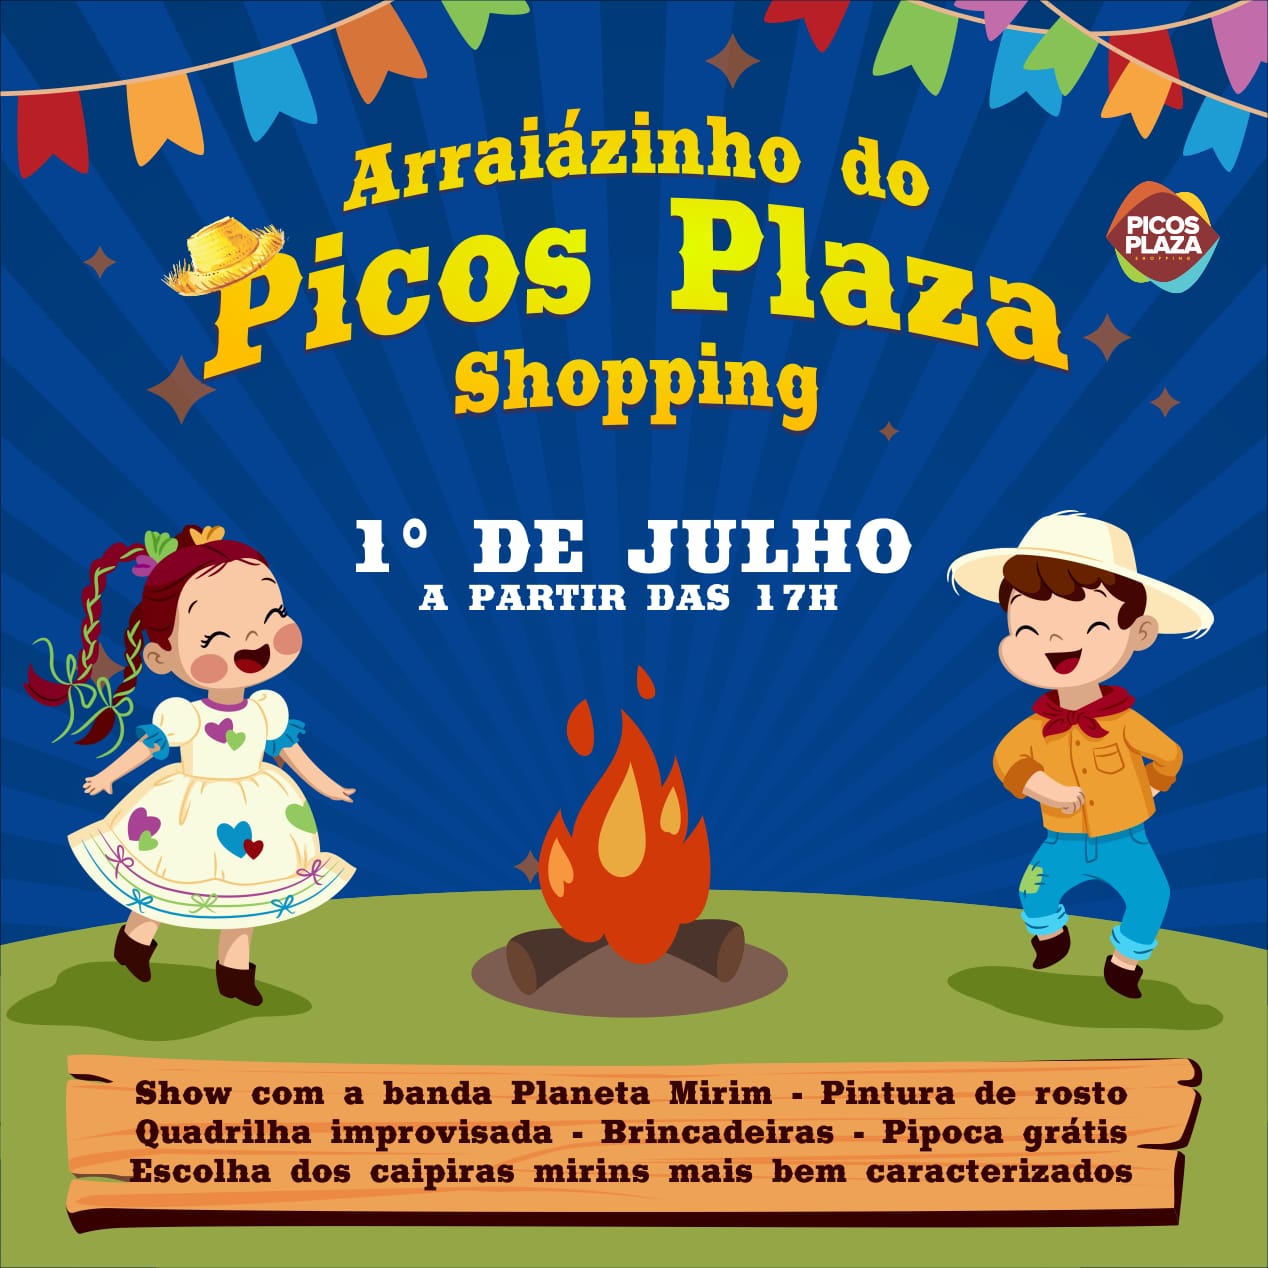 Prepara o vestido rodado e o chapéu de palha que o “Arraiázinho do Picos Plaza Shopping” vai começar